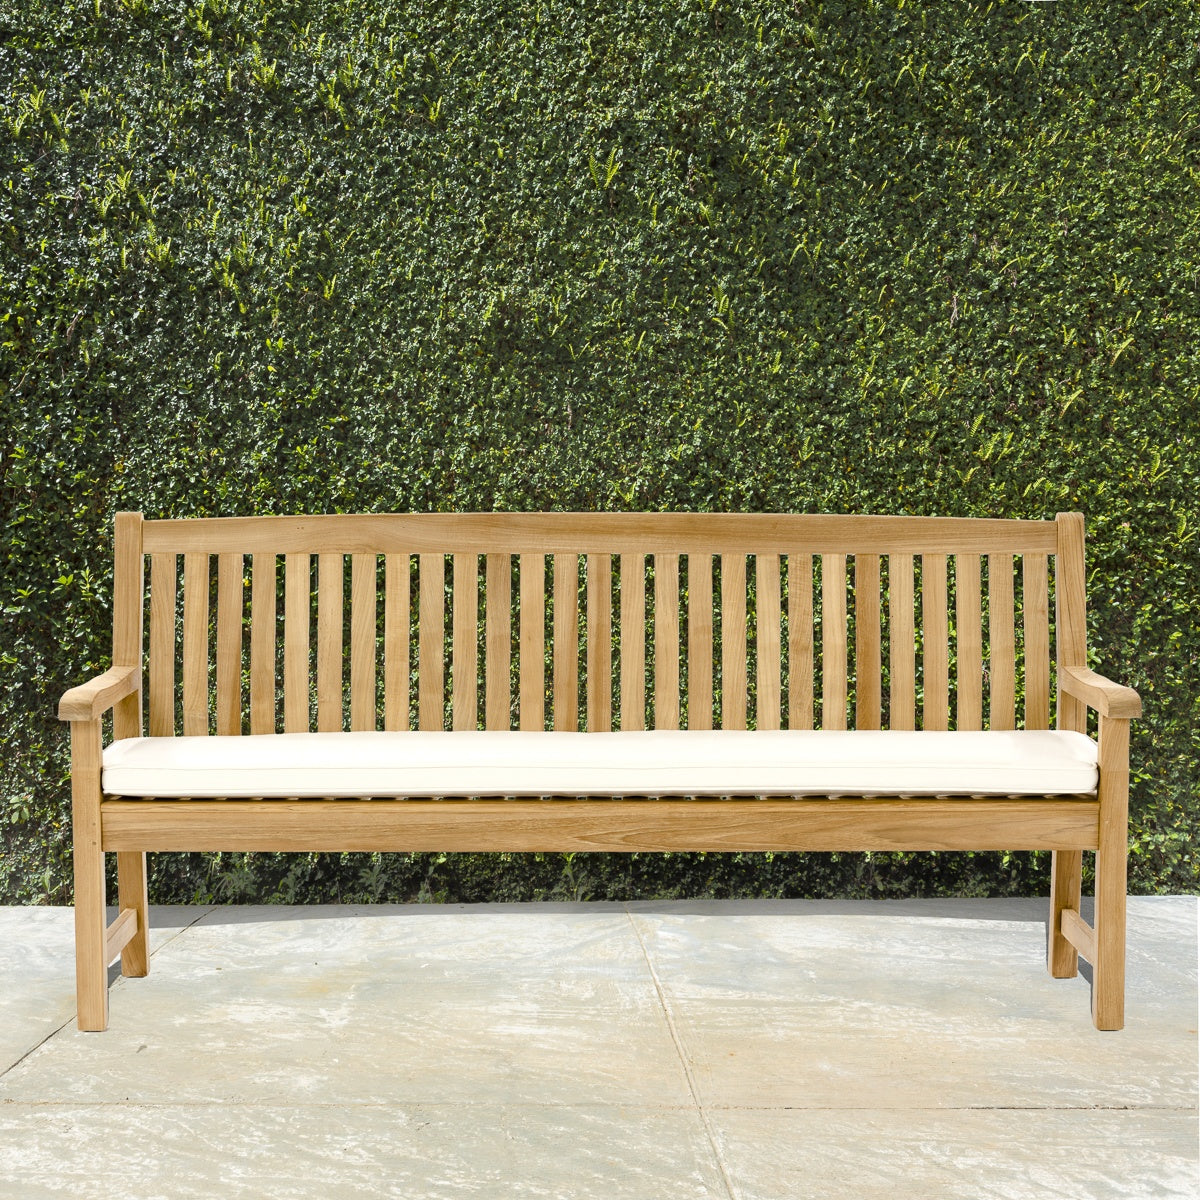 Westminster Teak - 6 ft Veranda Teak Bench Also Available in 4 ft & 5 ft Lengths - 13883